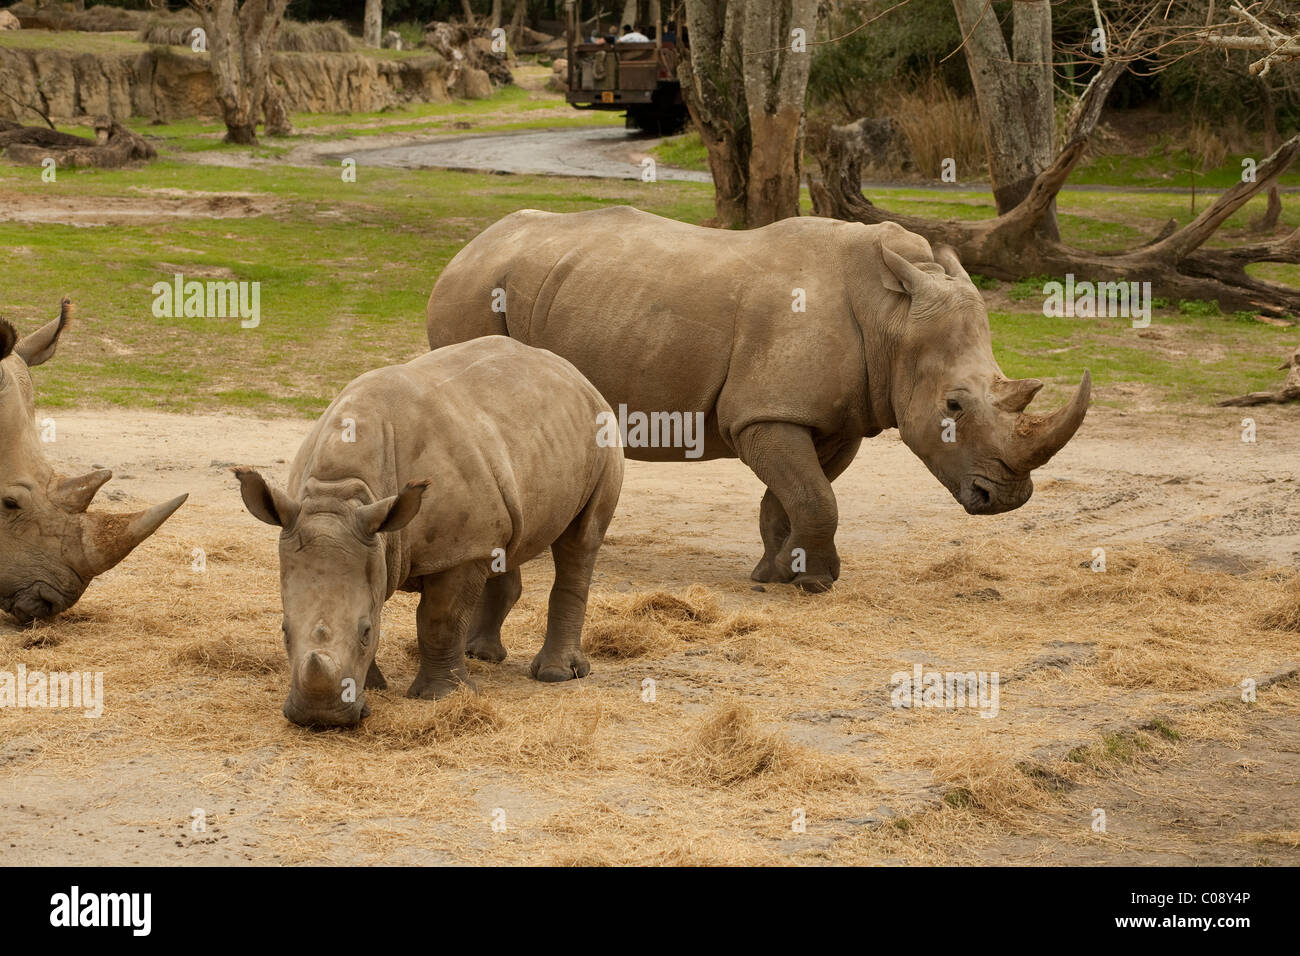 Disney World rinoceronte bianco si nutrono di fieno nel regno animale mentre ride veicolo può essere visto nella parte posteriore. Foto Stock